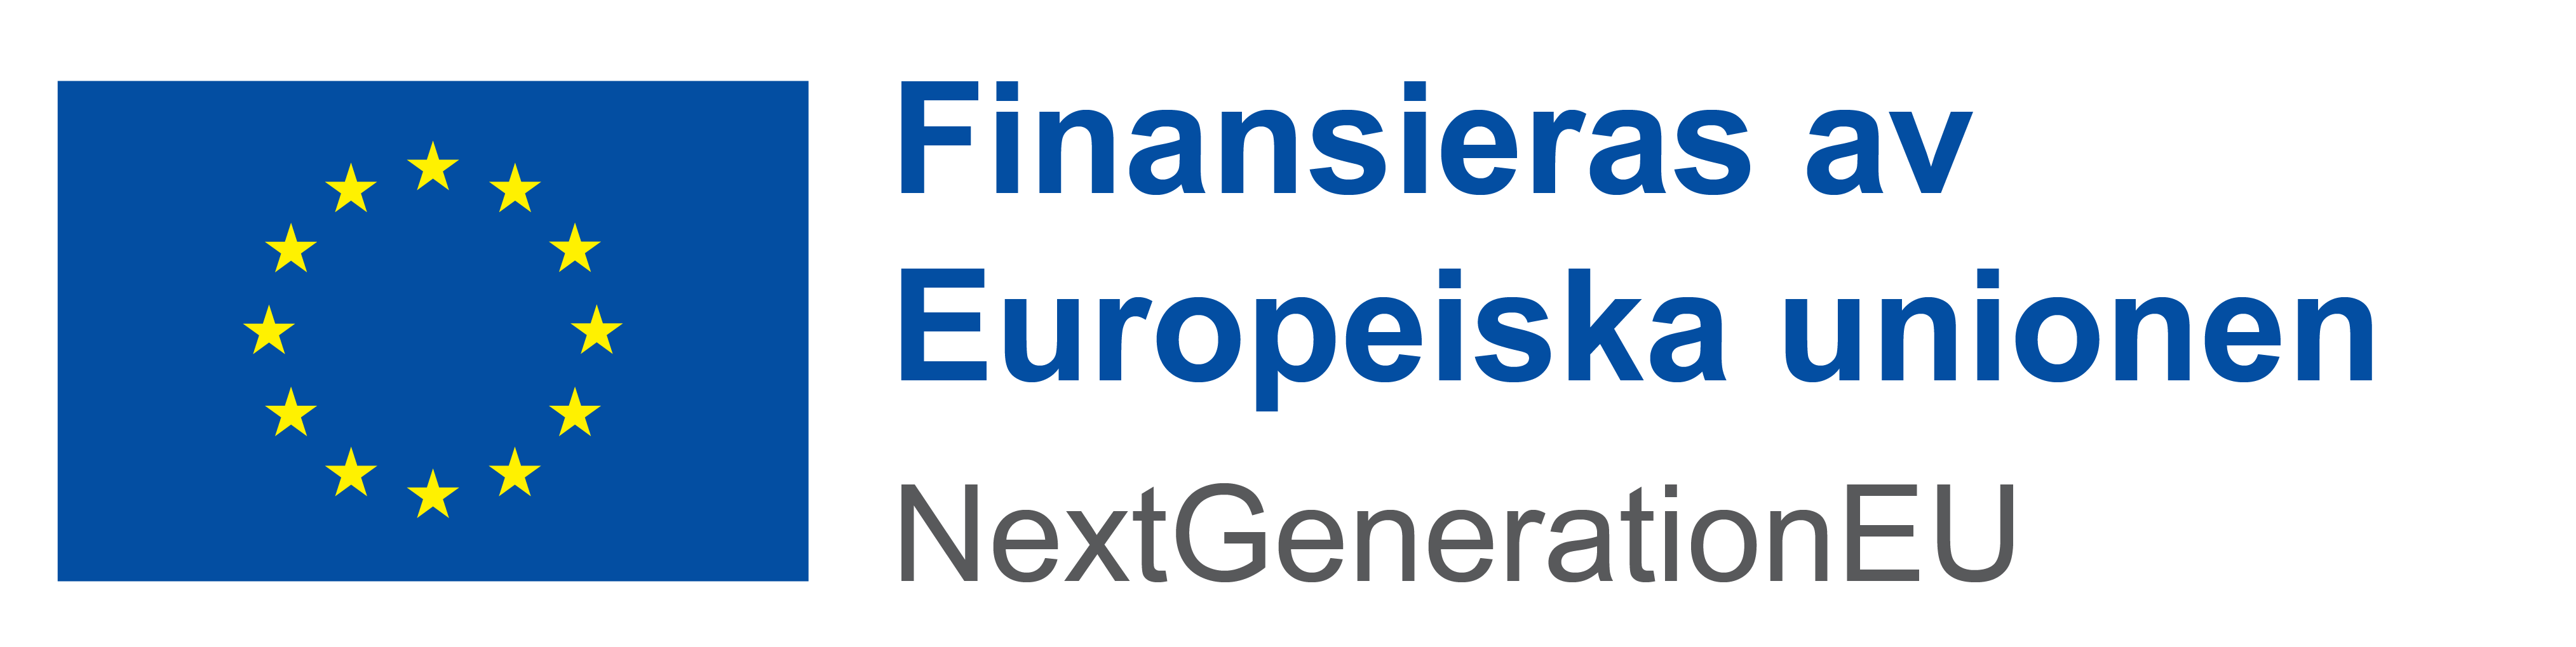 Logo: finansieras av Europeiska unionen, Next GenerationEU